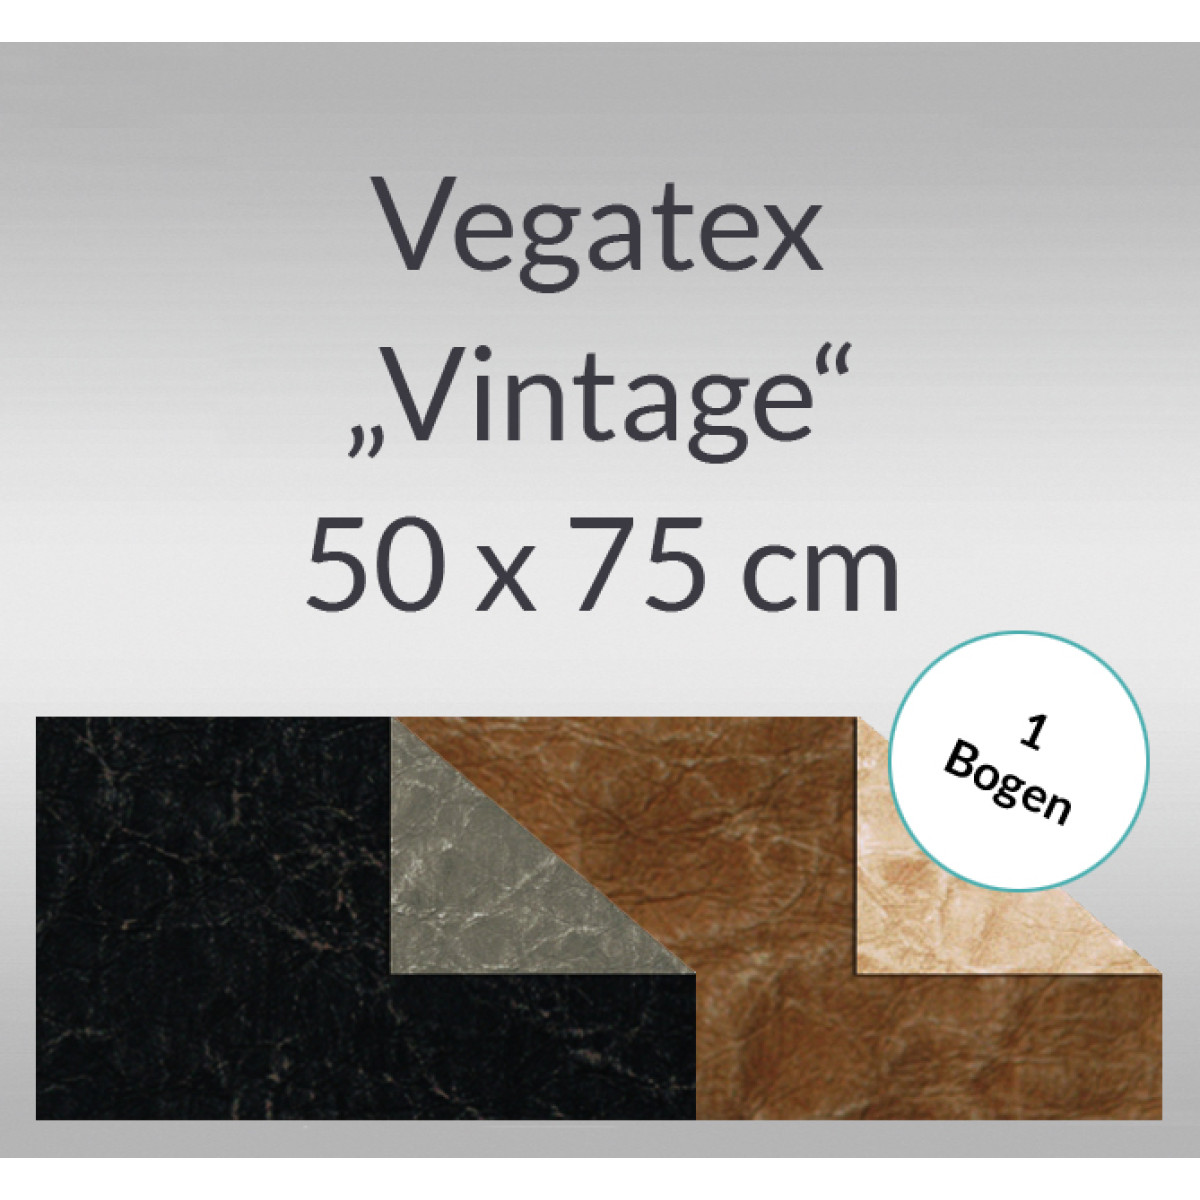 Vegatex "Vintage" 50 x 75 cm - 1 Bogen